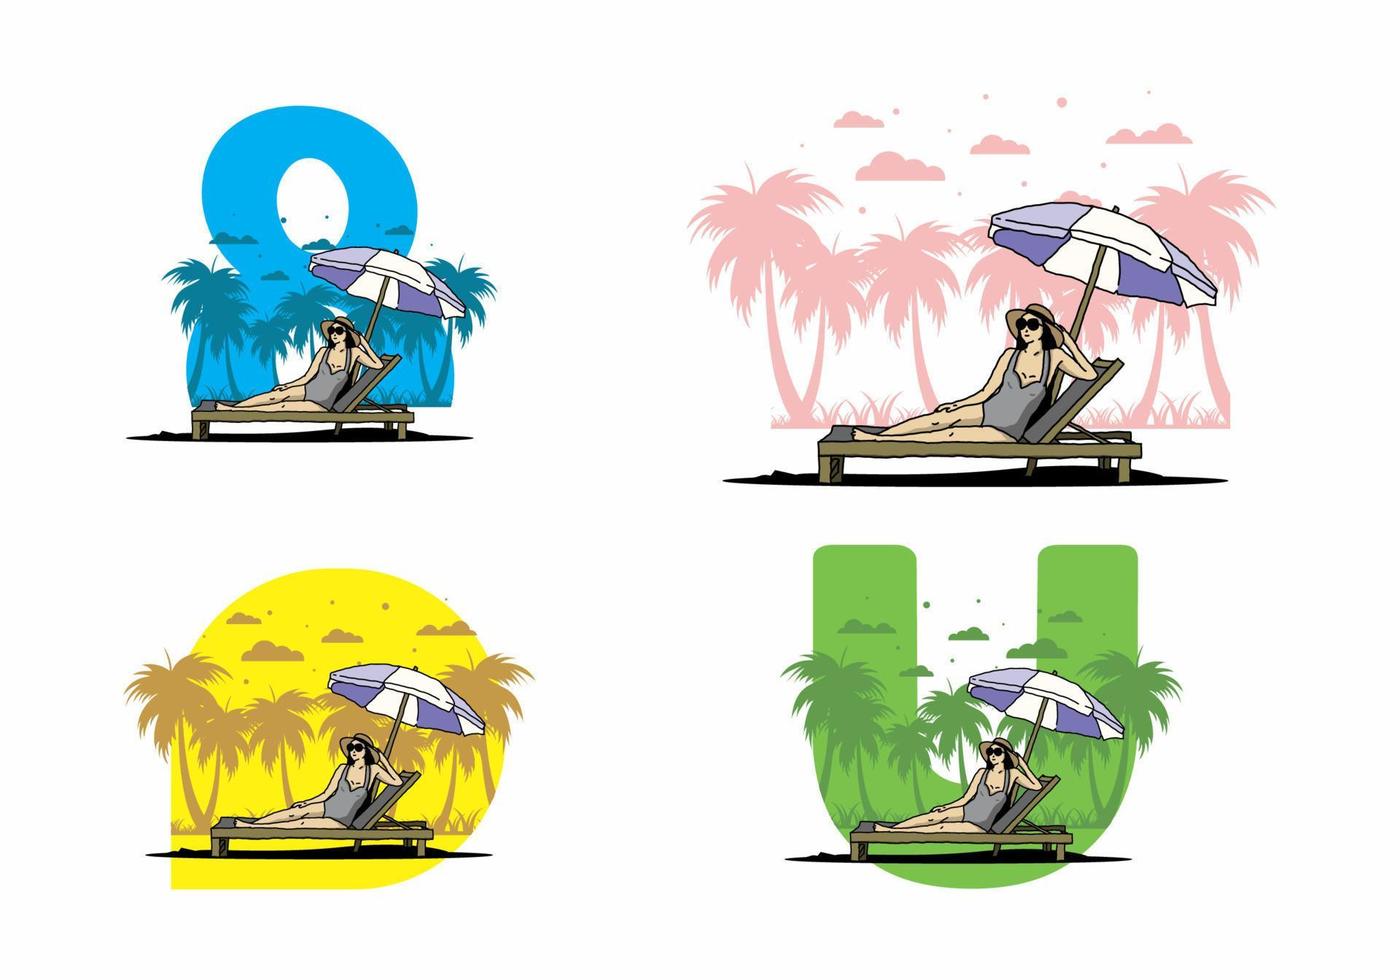 détendez-vous sur la chaise de plage sous l'illustration du parapluie vecteur